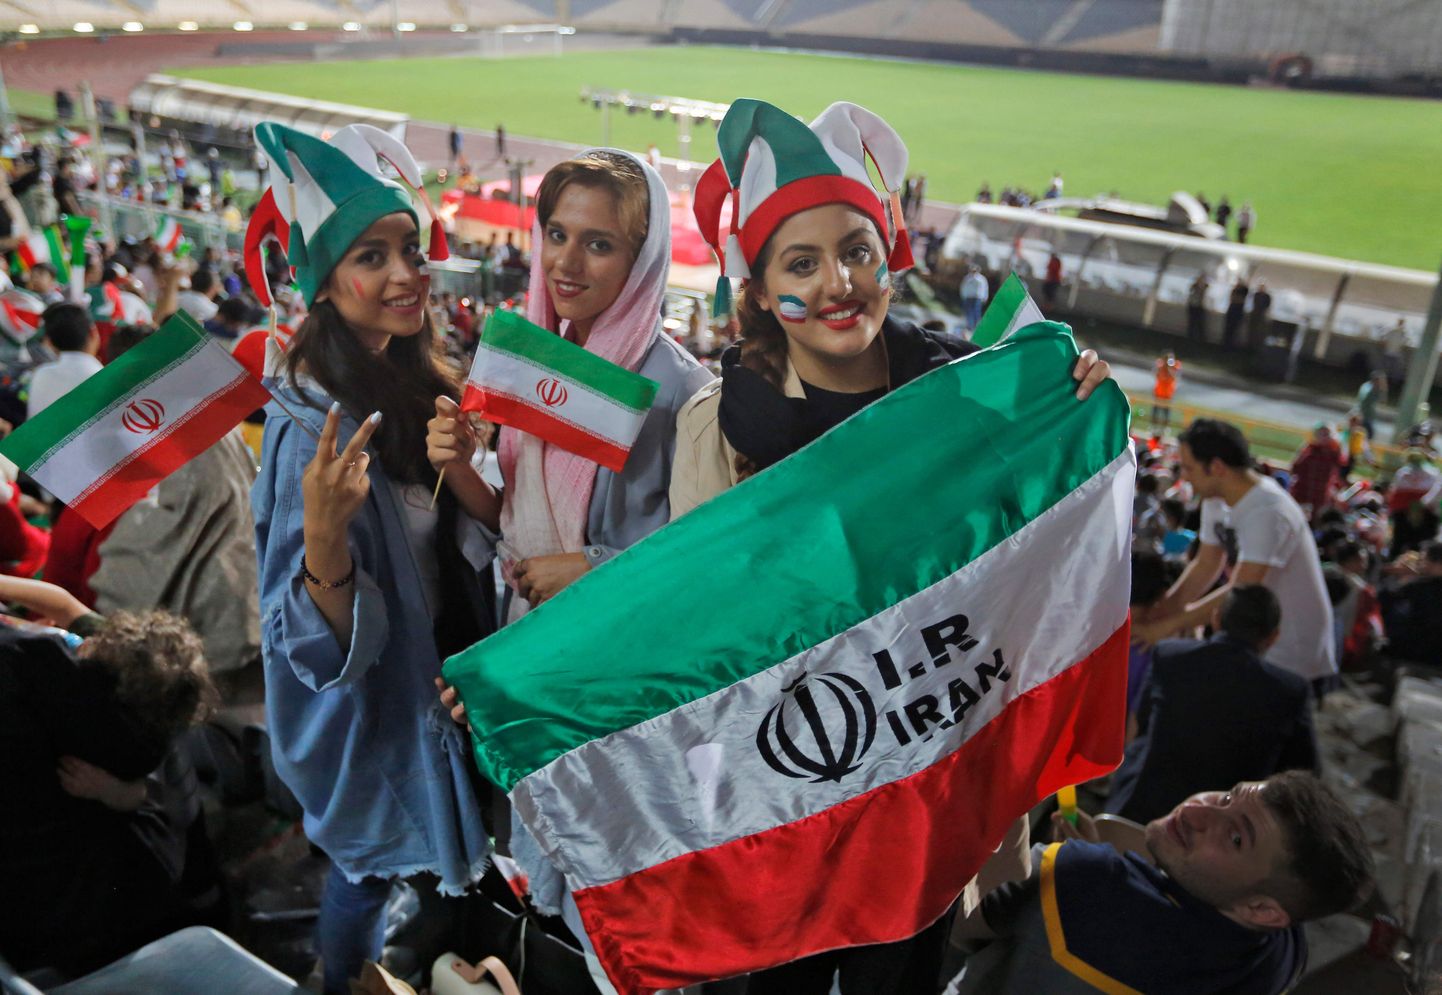 Iraani naised vaatamas Teheranis staadioniekraanidelt 2018. aasta MM-finaalturniiri mängu Iraan - Portugal.